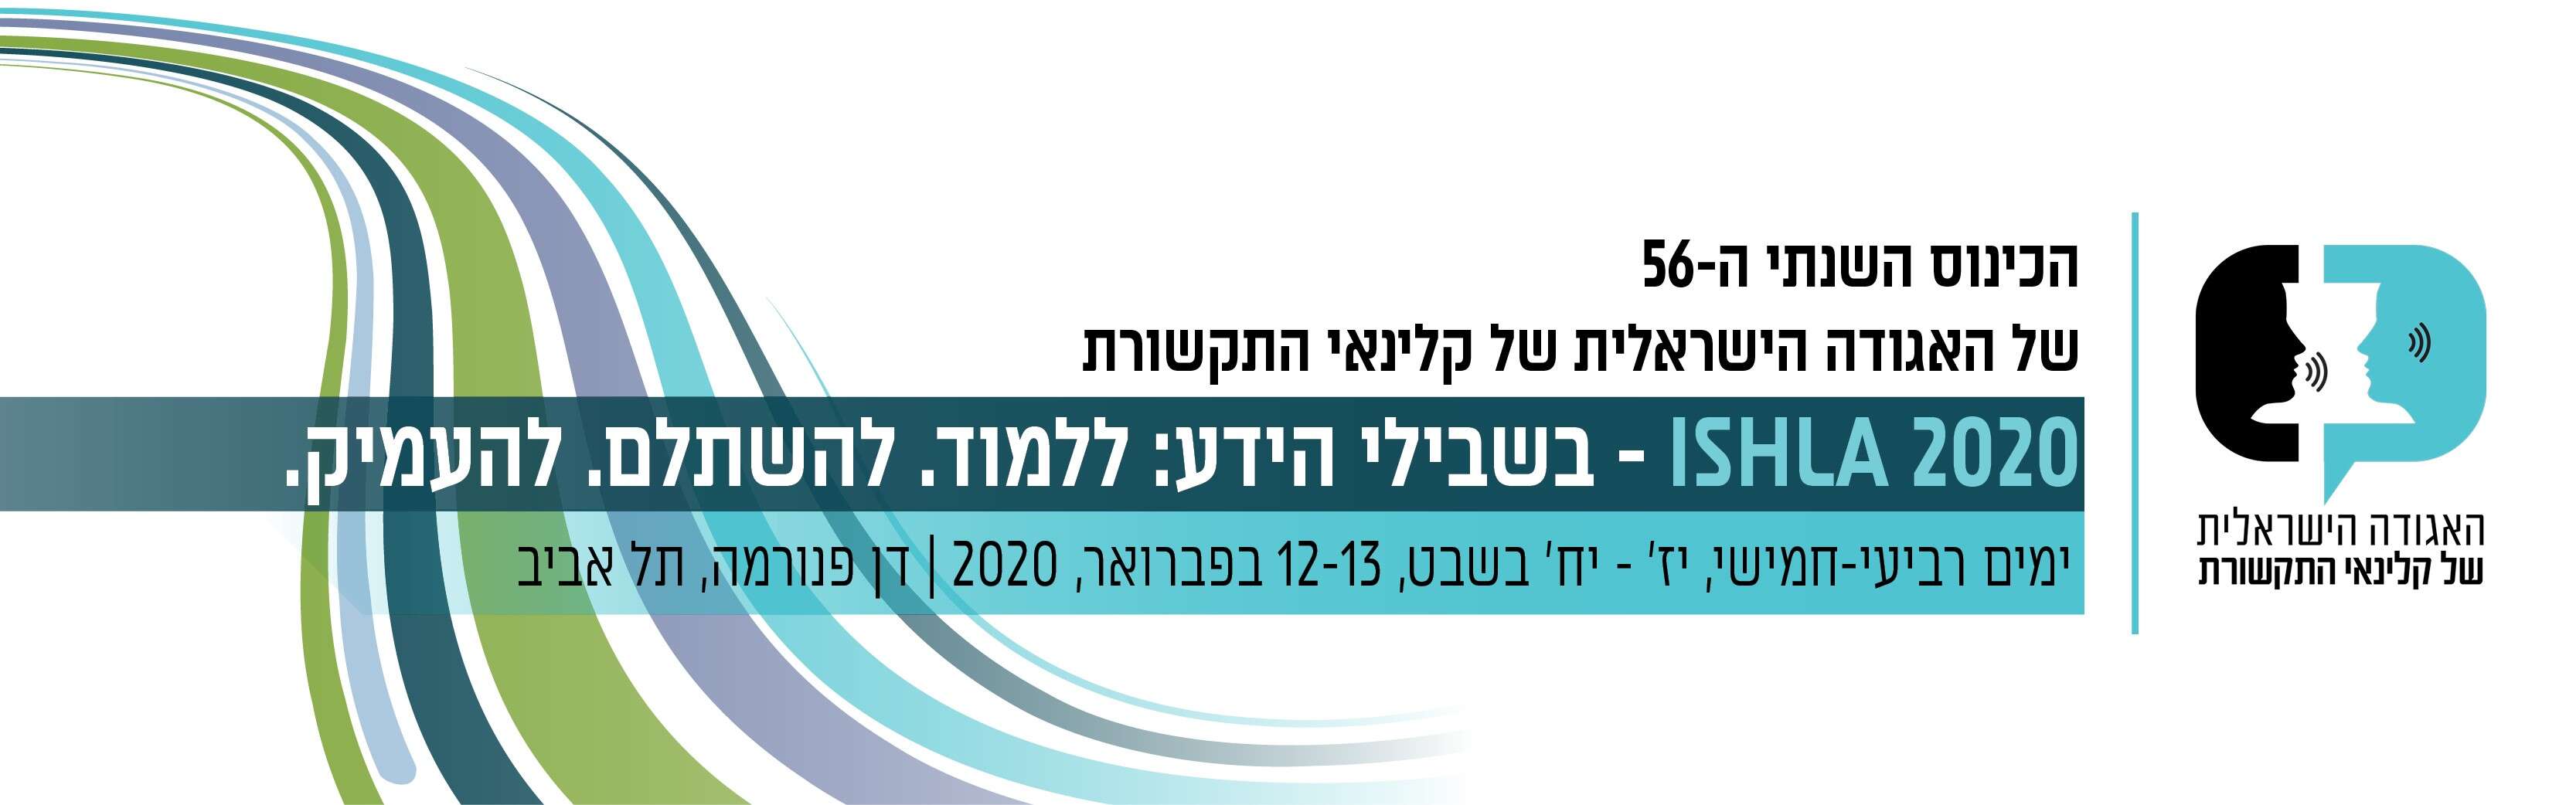 הכינוס ה-56 של האגודה הישראלית של קלינאי התקשורת